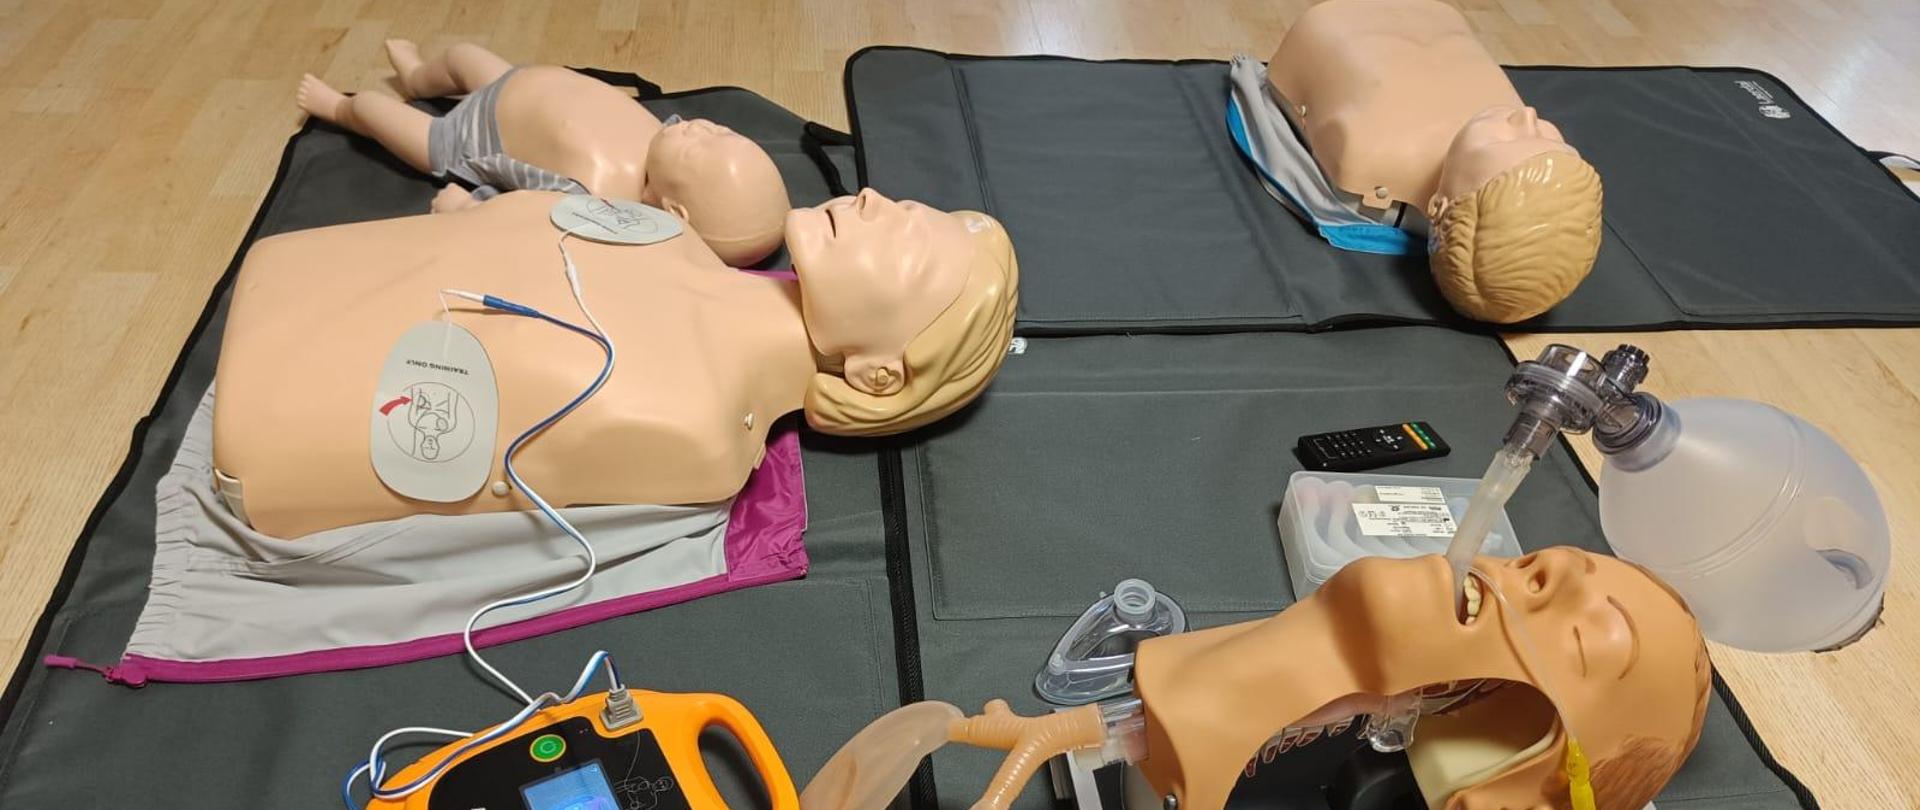 Na zdjęciu widoczne są manekiny i AED do ćwiczeń